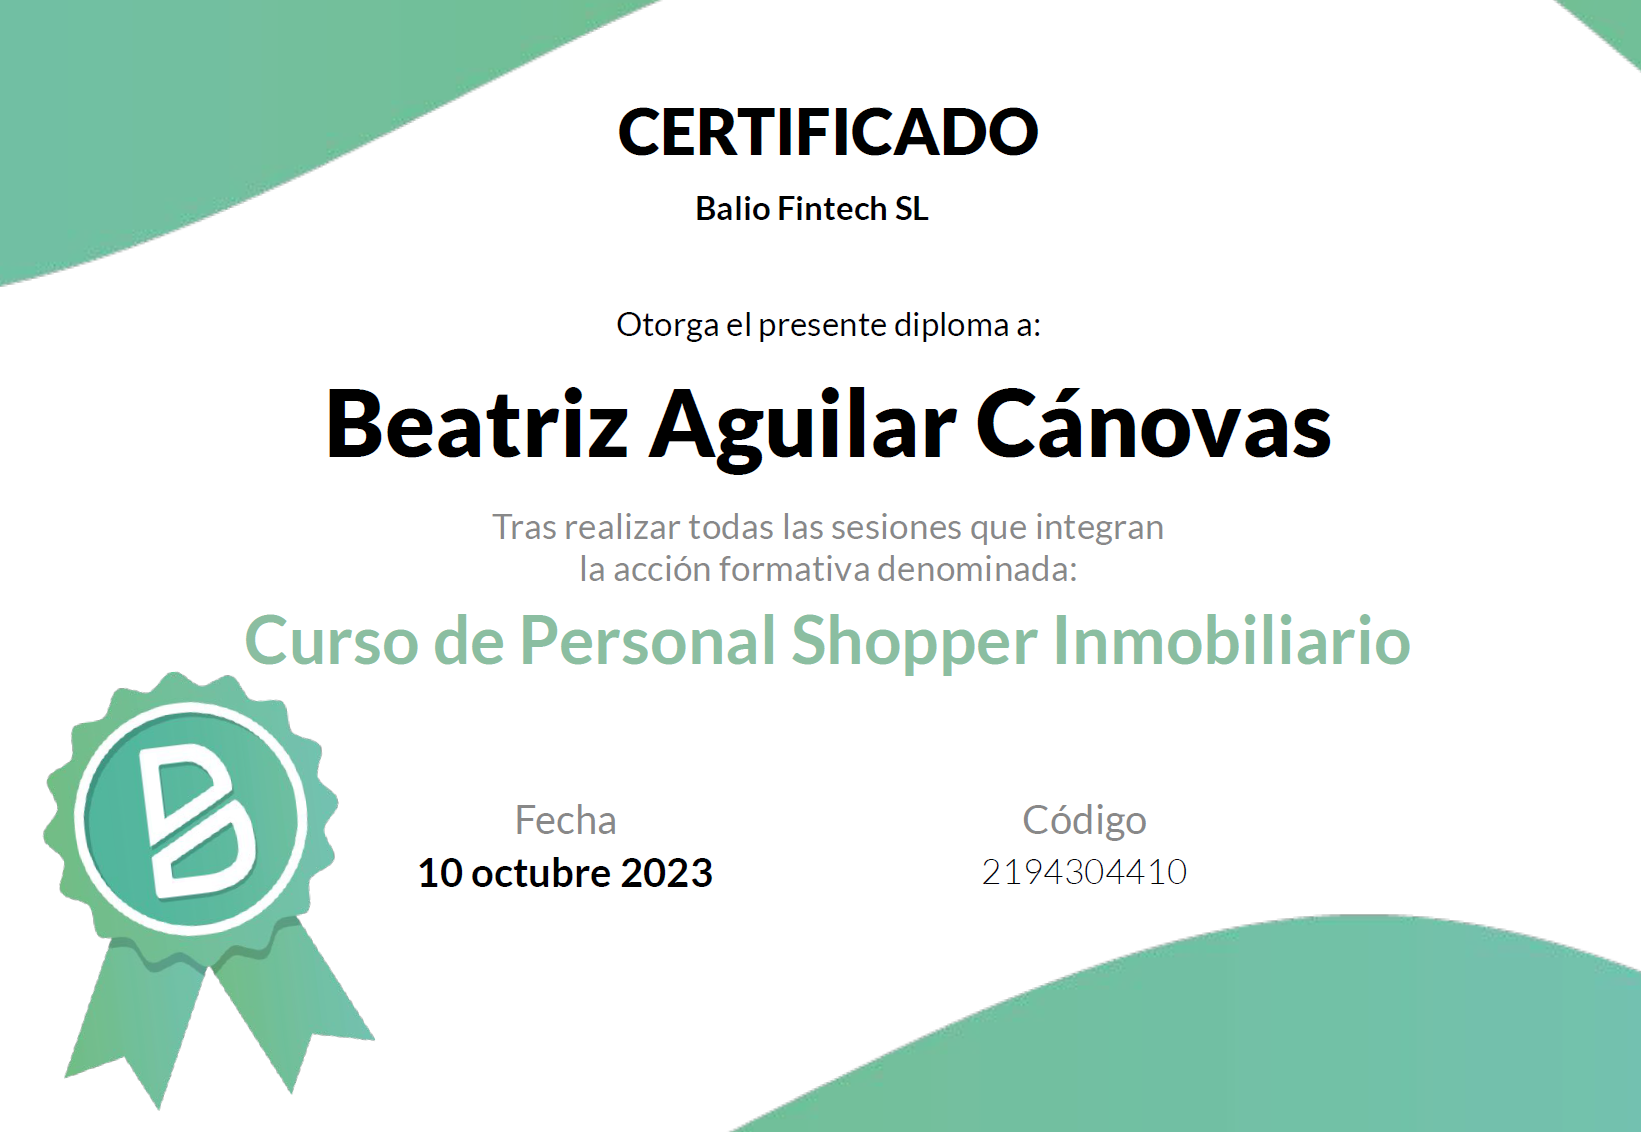 Certificado Personal Shopper Inmobiliario de Balio - Beatriz Aguilar